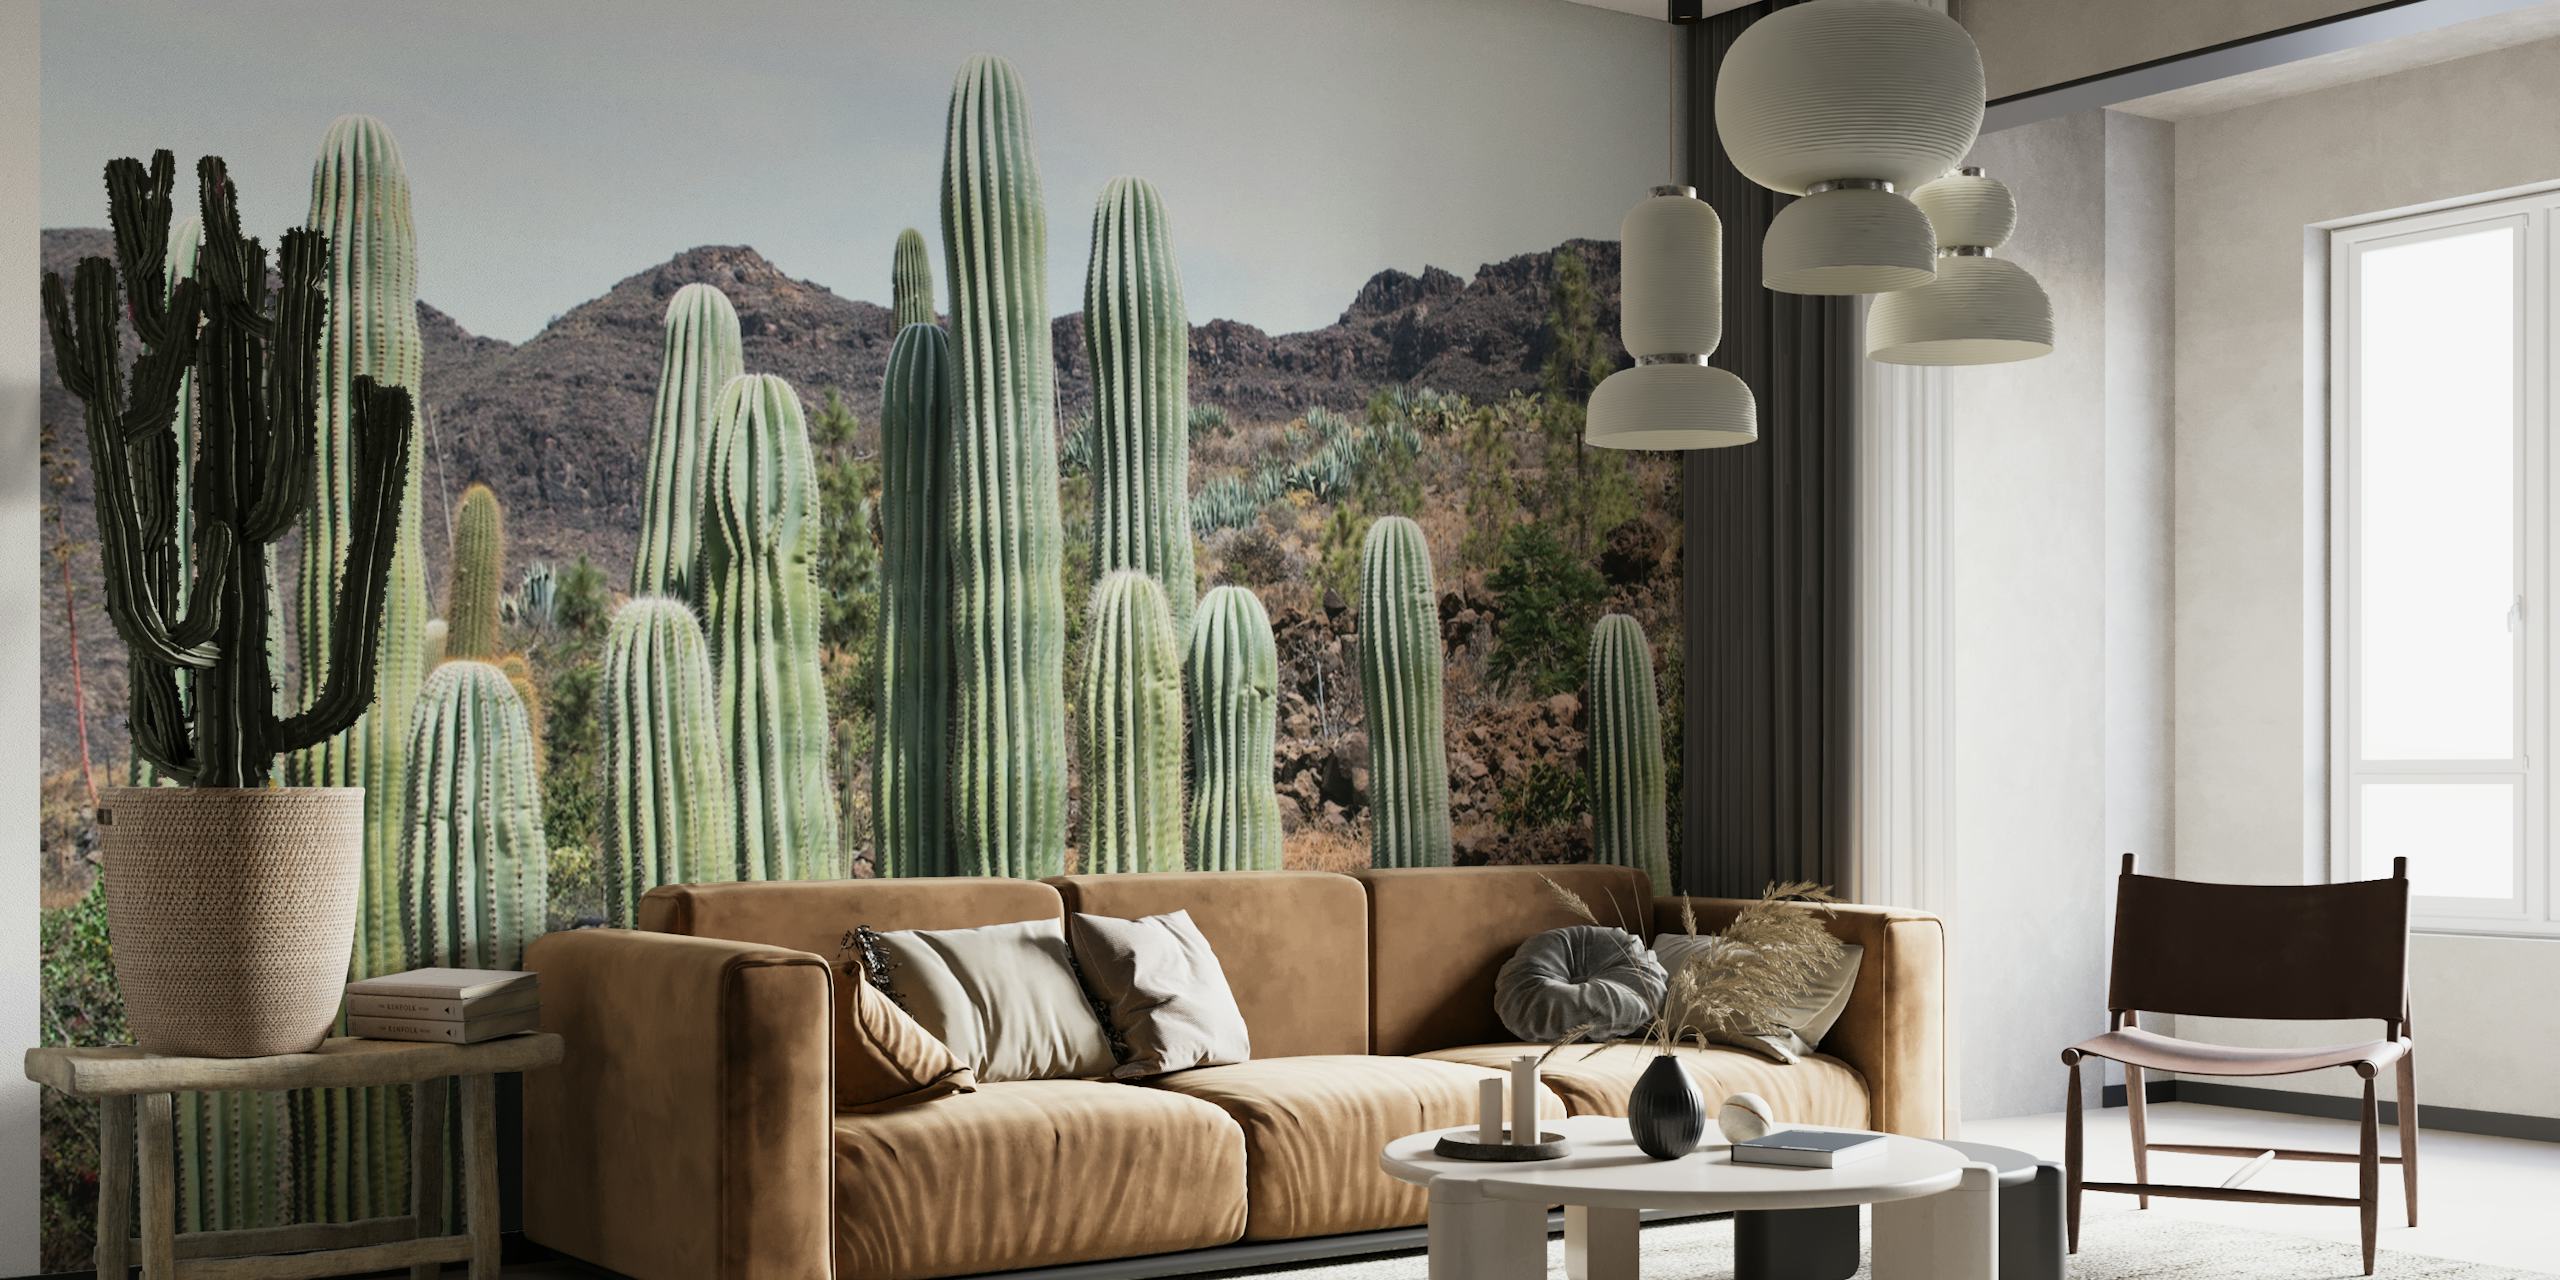 Zidna slika Cactus Oasis s visokim kaktusima i planinskom pozadinom